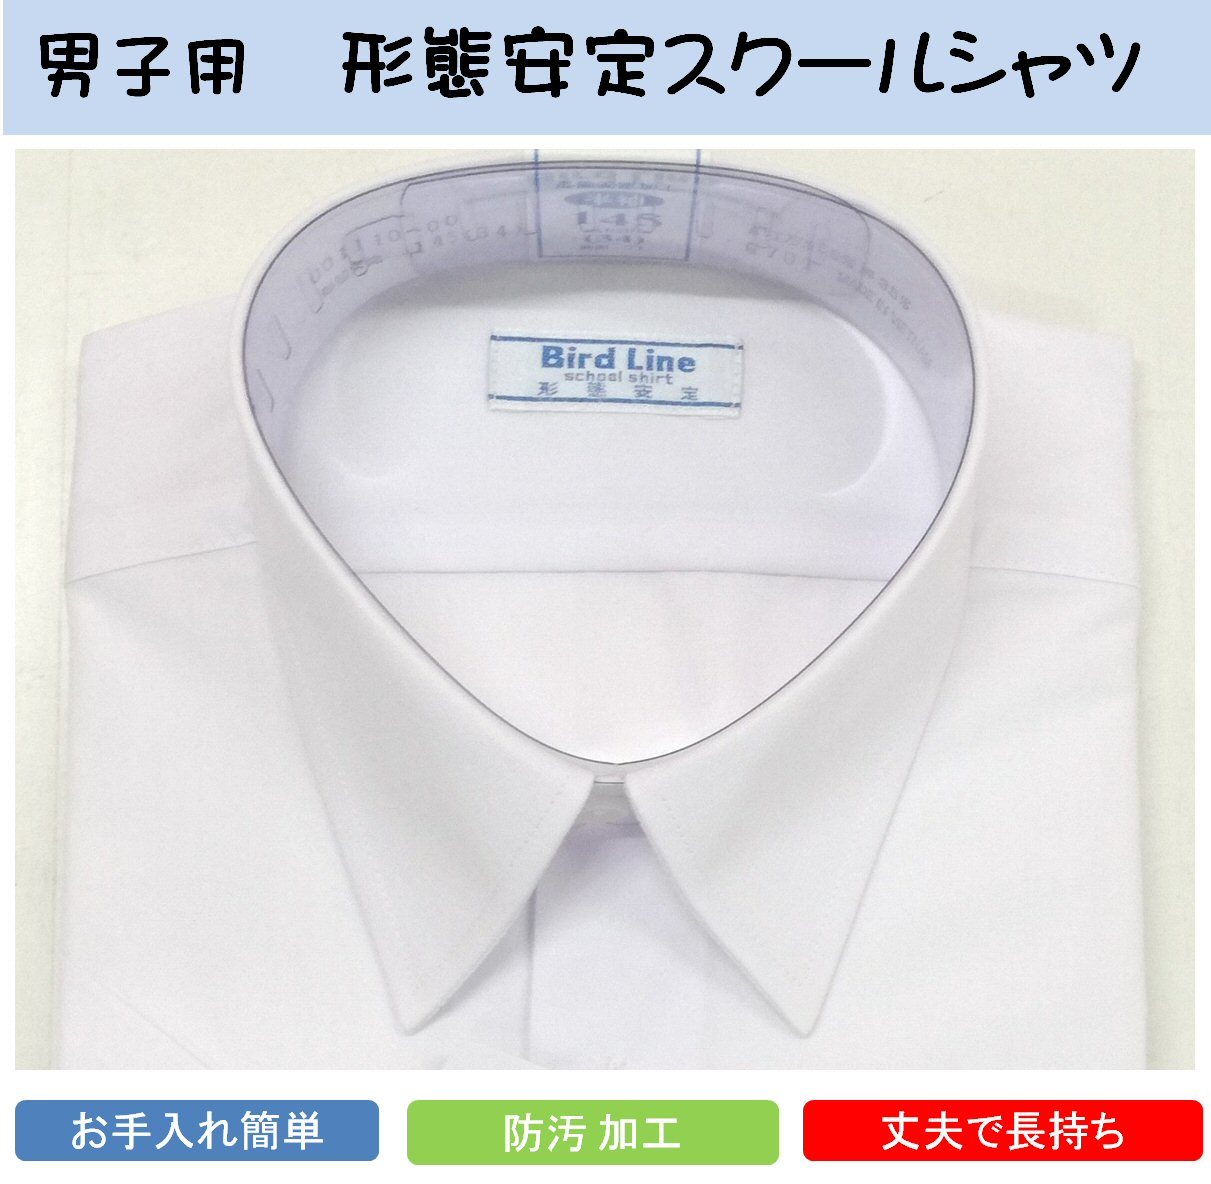 男子スクールシャツ 半袖（白） A体 2枚組 制服 形態安定 防汚加工